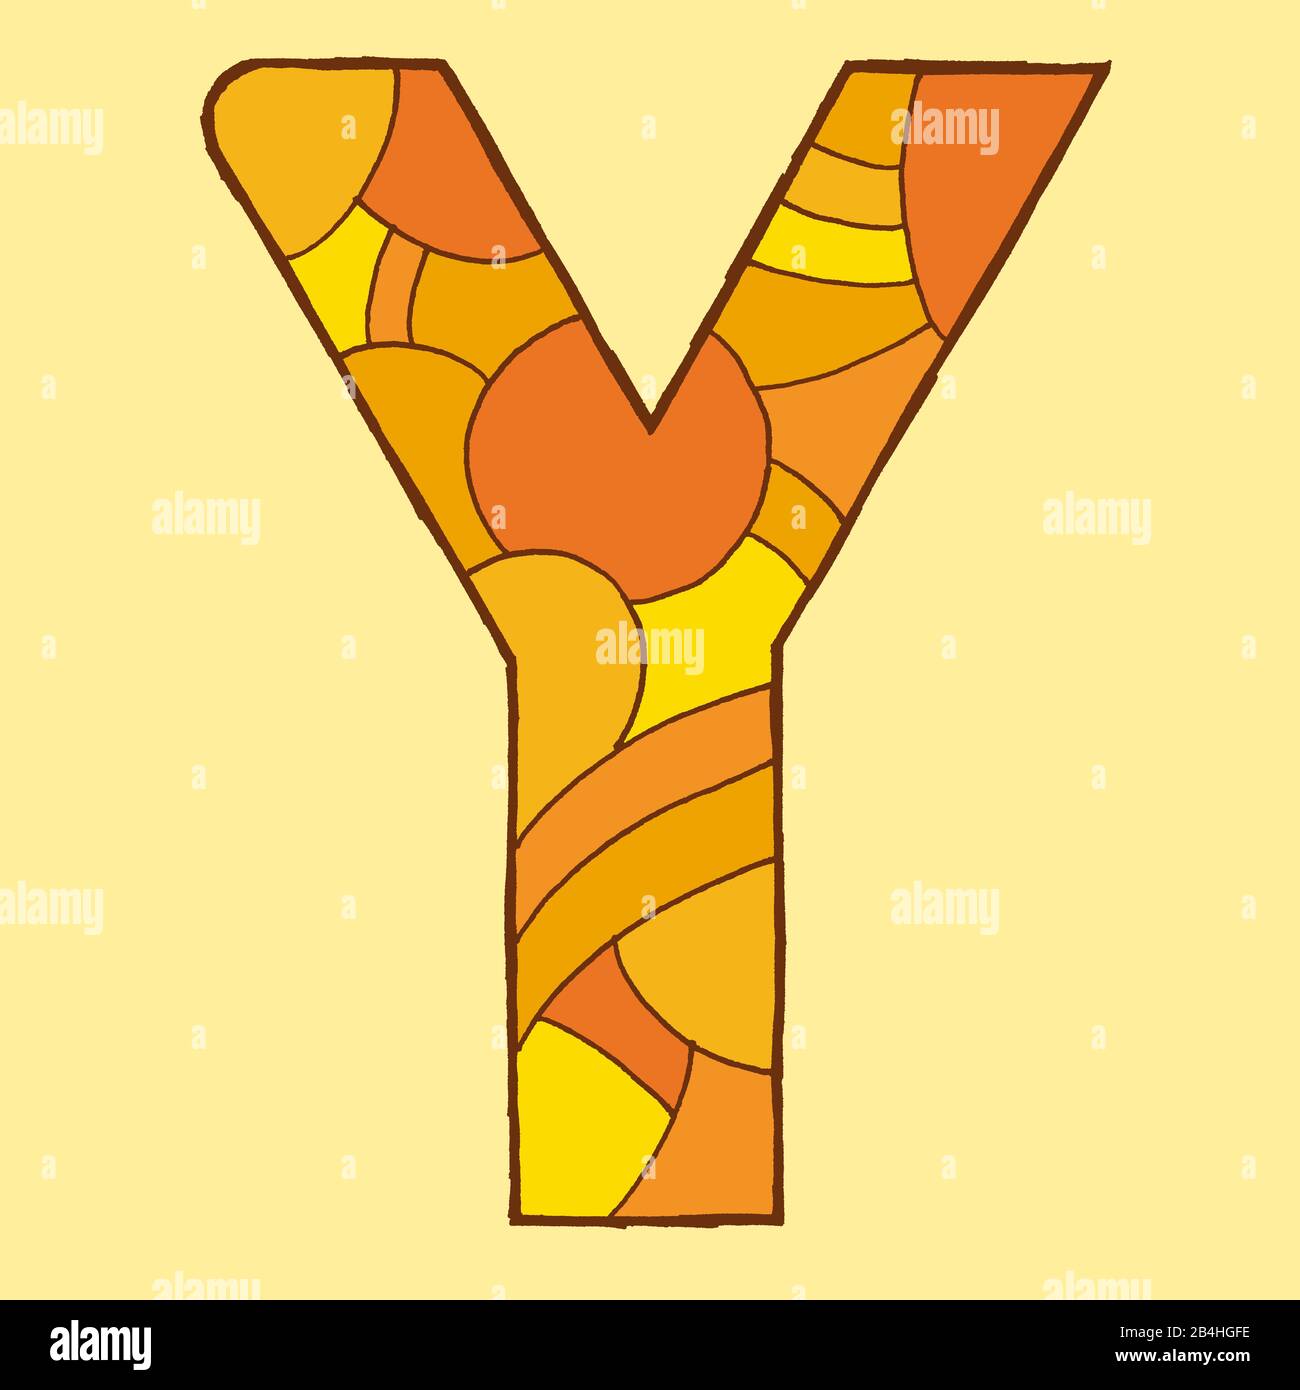 Lettre y, dessinée comme illustration vectorielle, dans des tons orange sur un fond jaune pâle dans un style pop art Banque D'Images